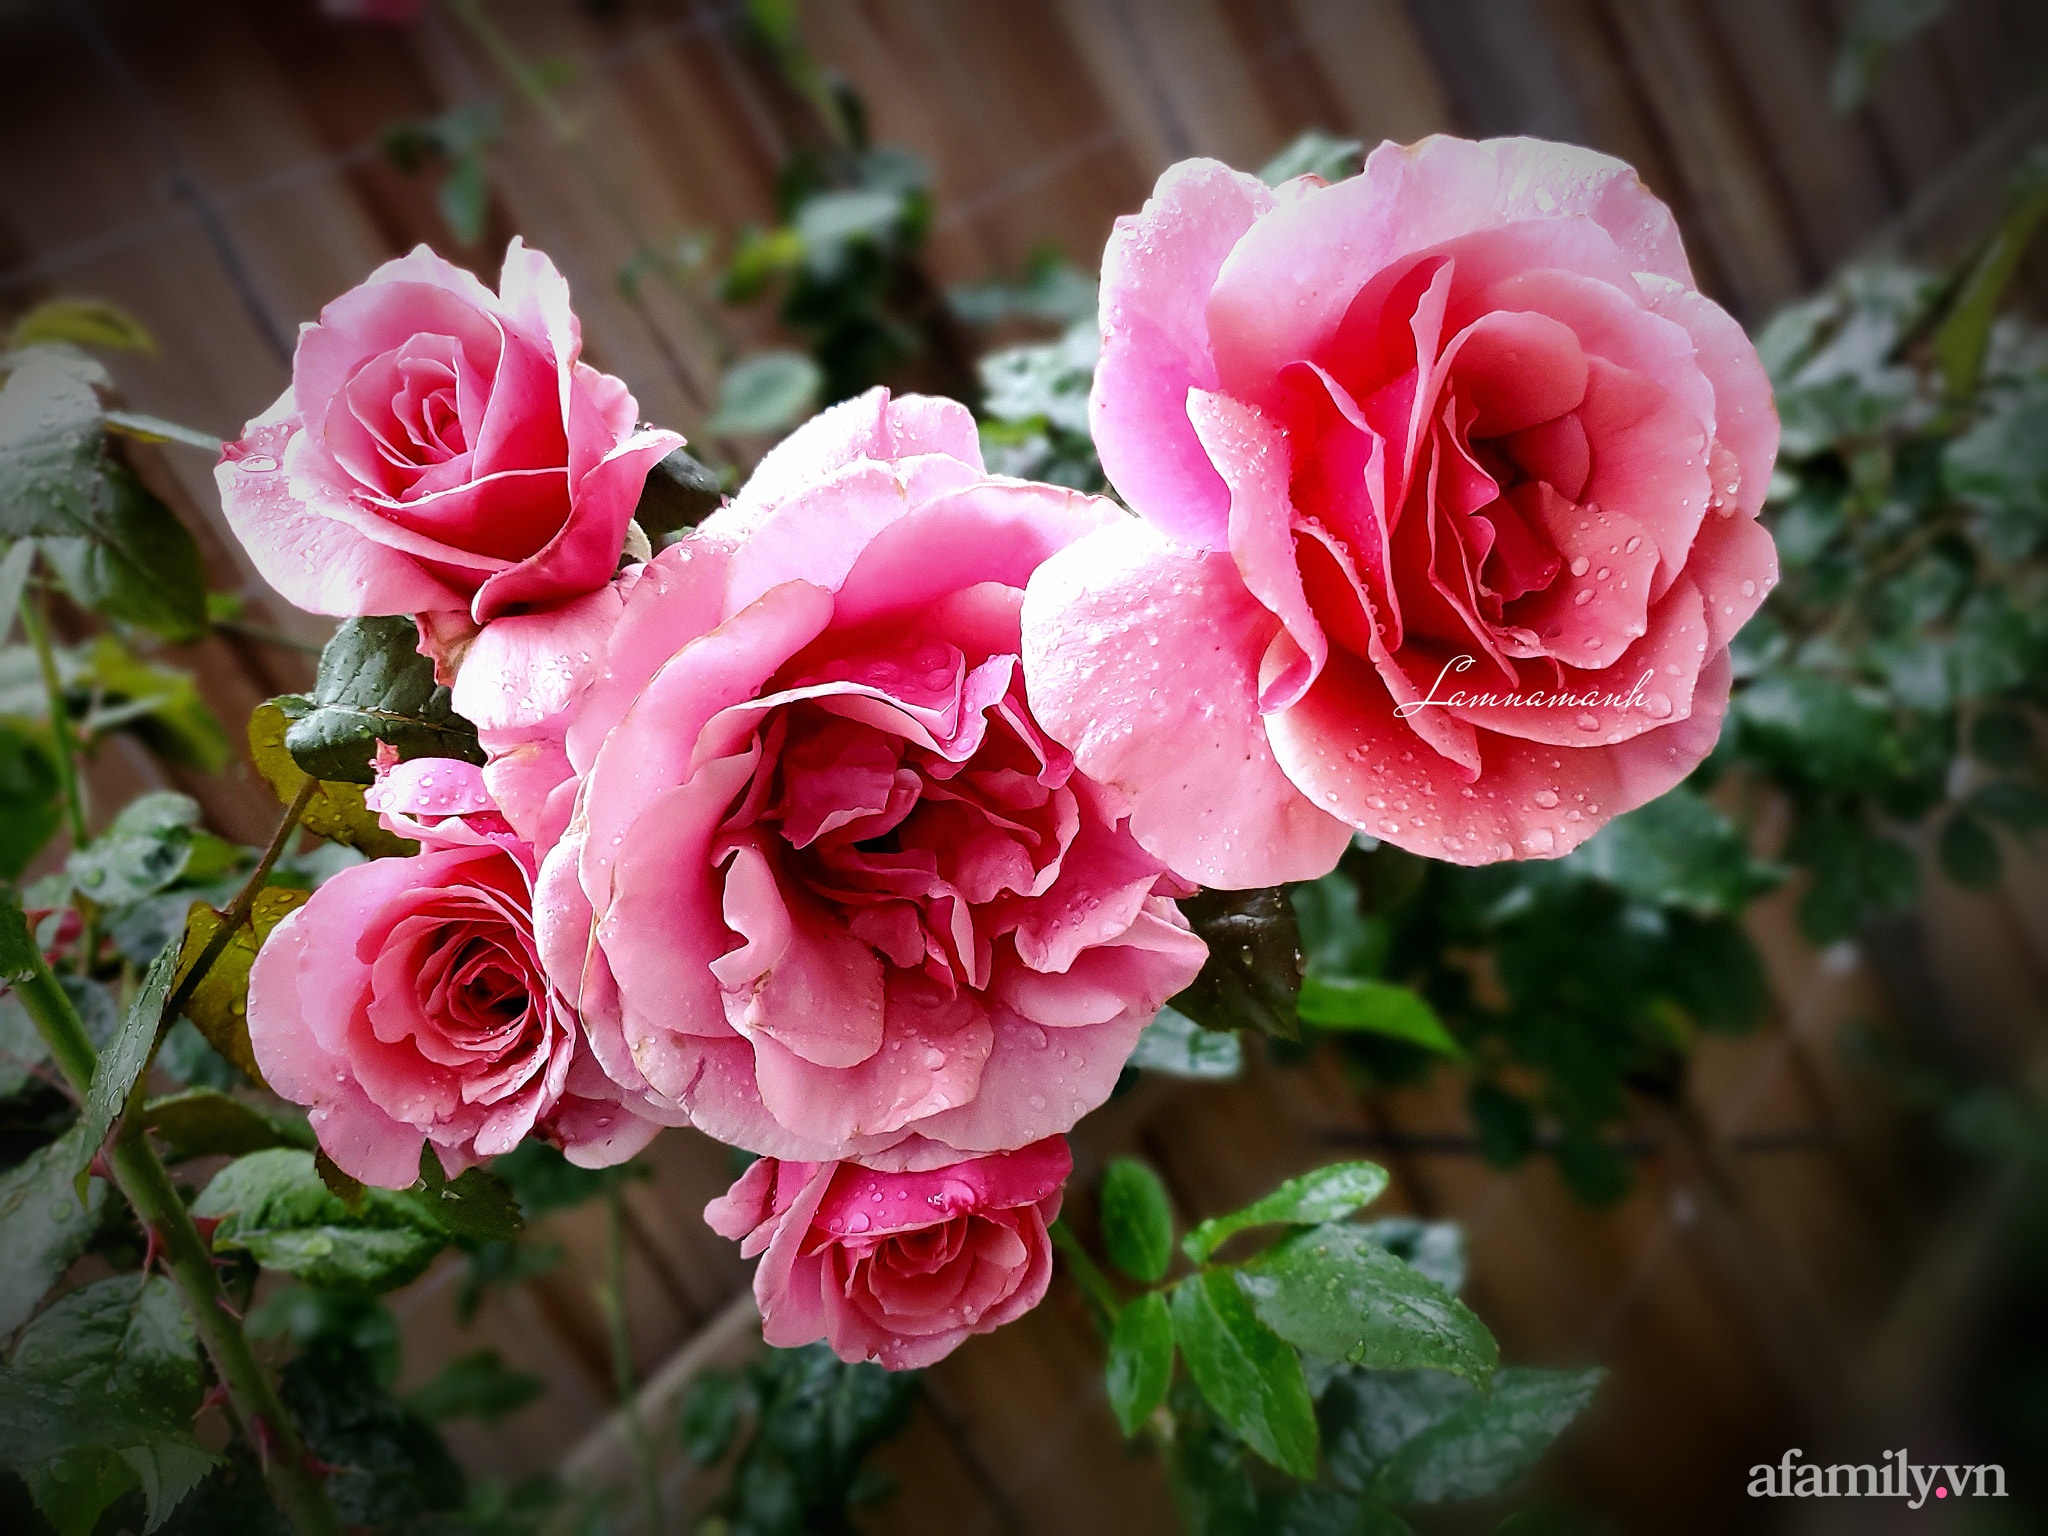 Vườn hồng 250m² ngát hương rực rỡ sắc màu đẹp như cổ tích của mẹ Việt ở Úc - Ảnh 8.